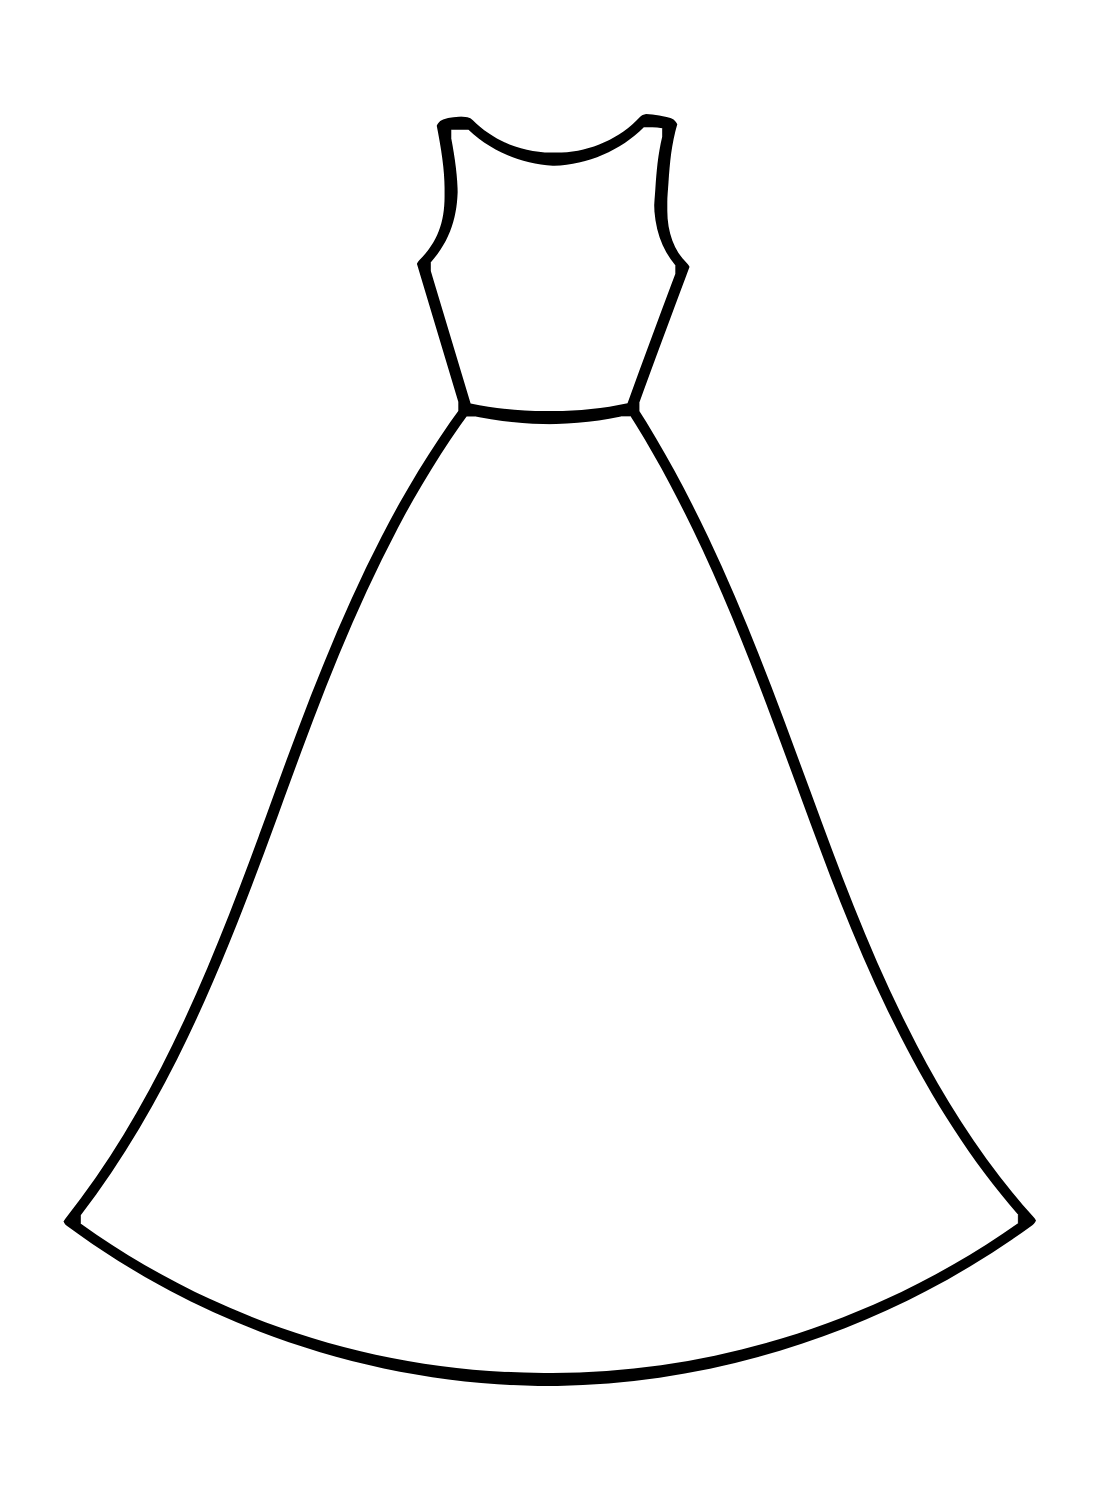 تلوين رسمة فستان الزفاف